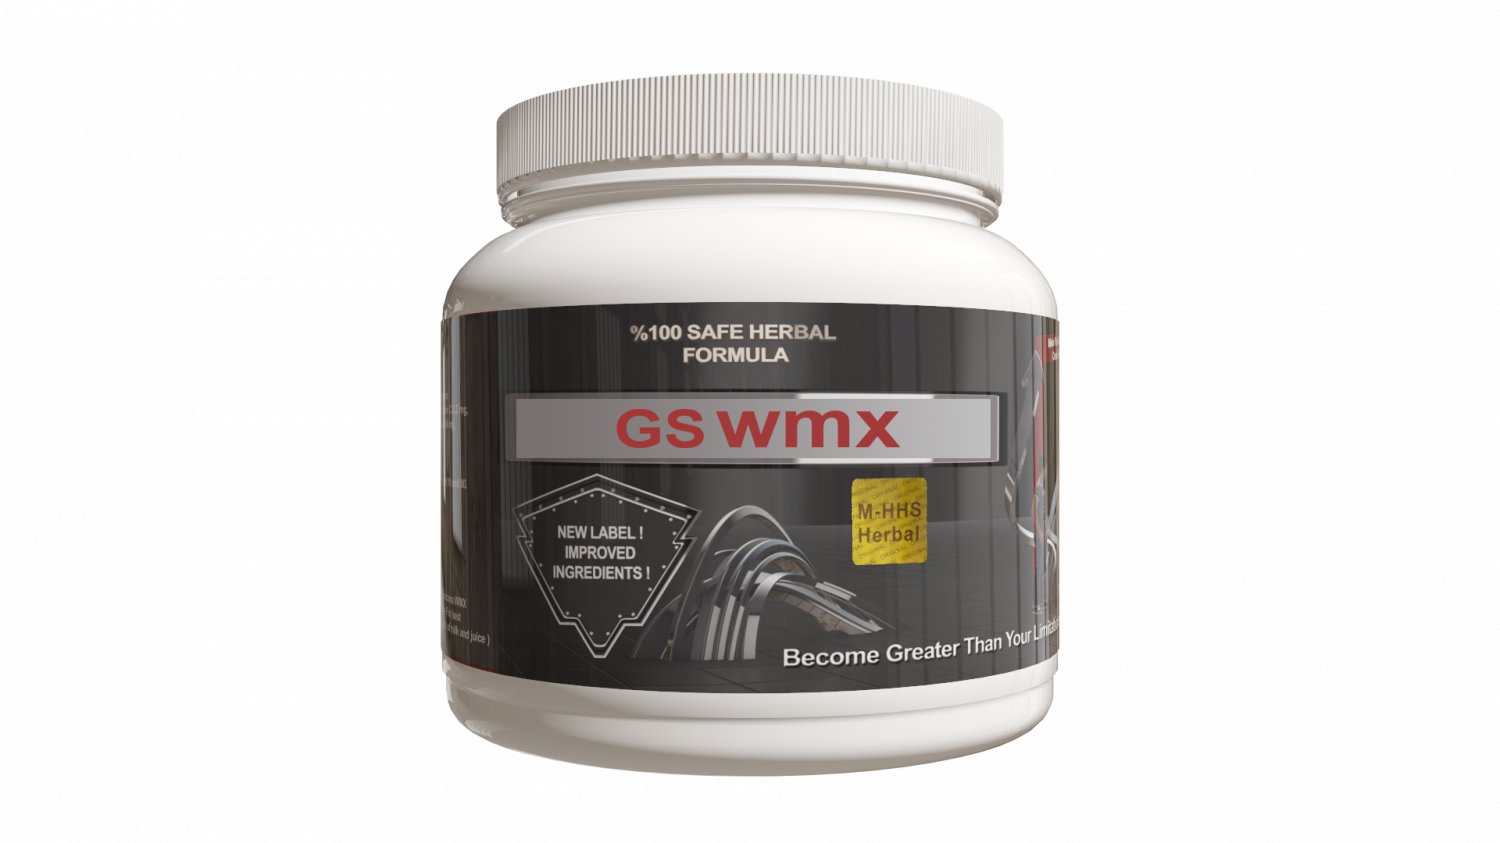 Gs wmx 1 month supply powder form